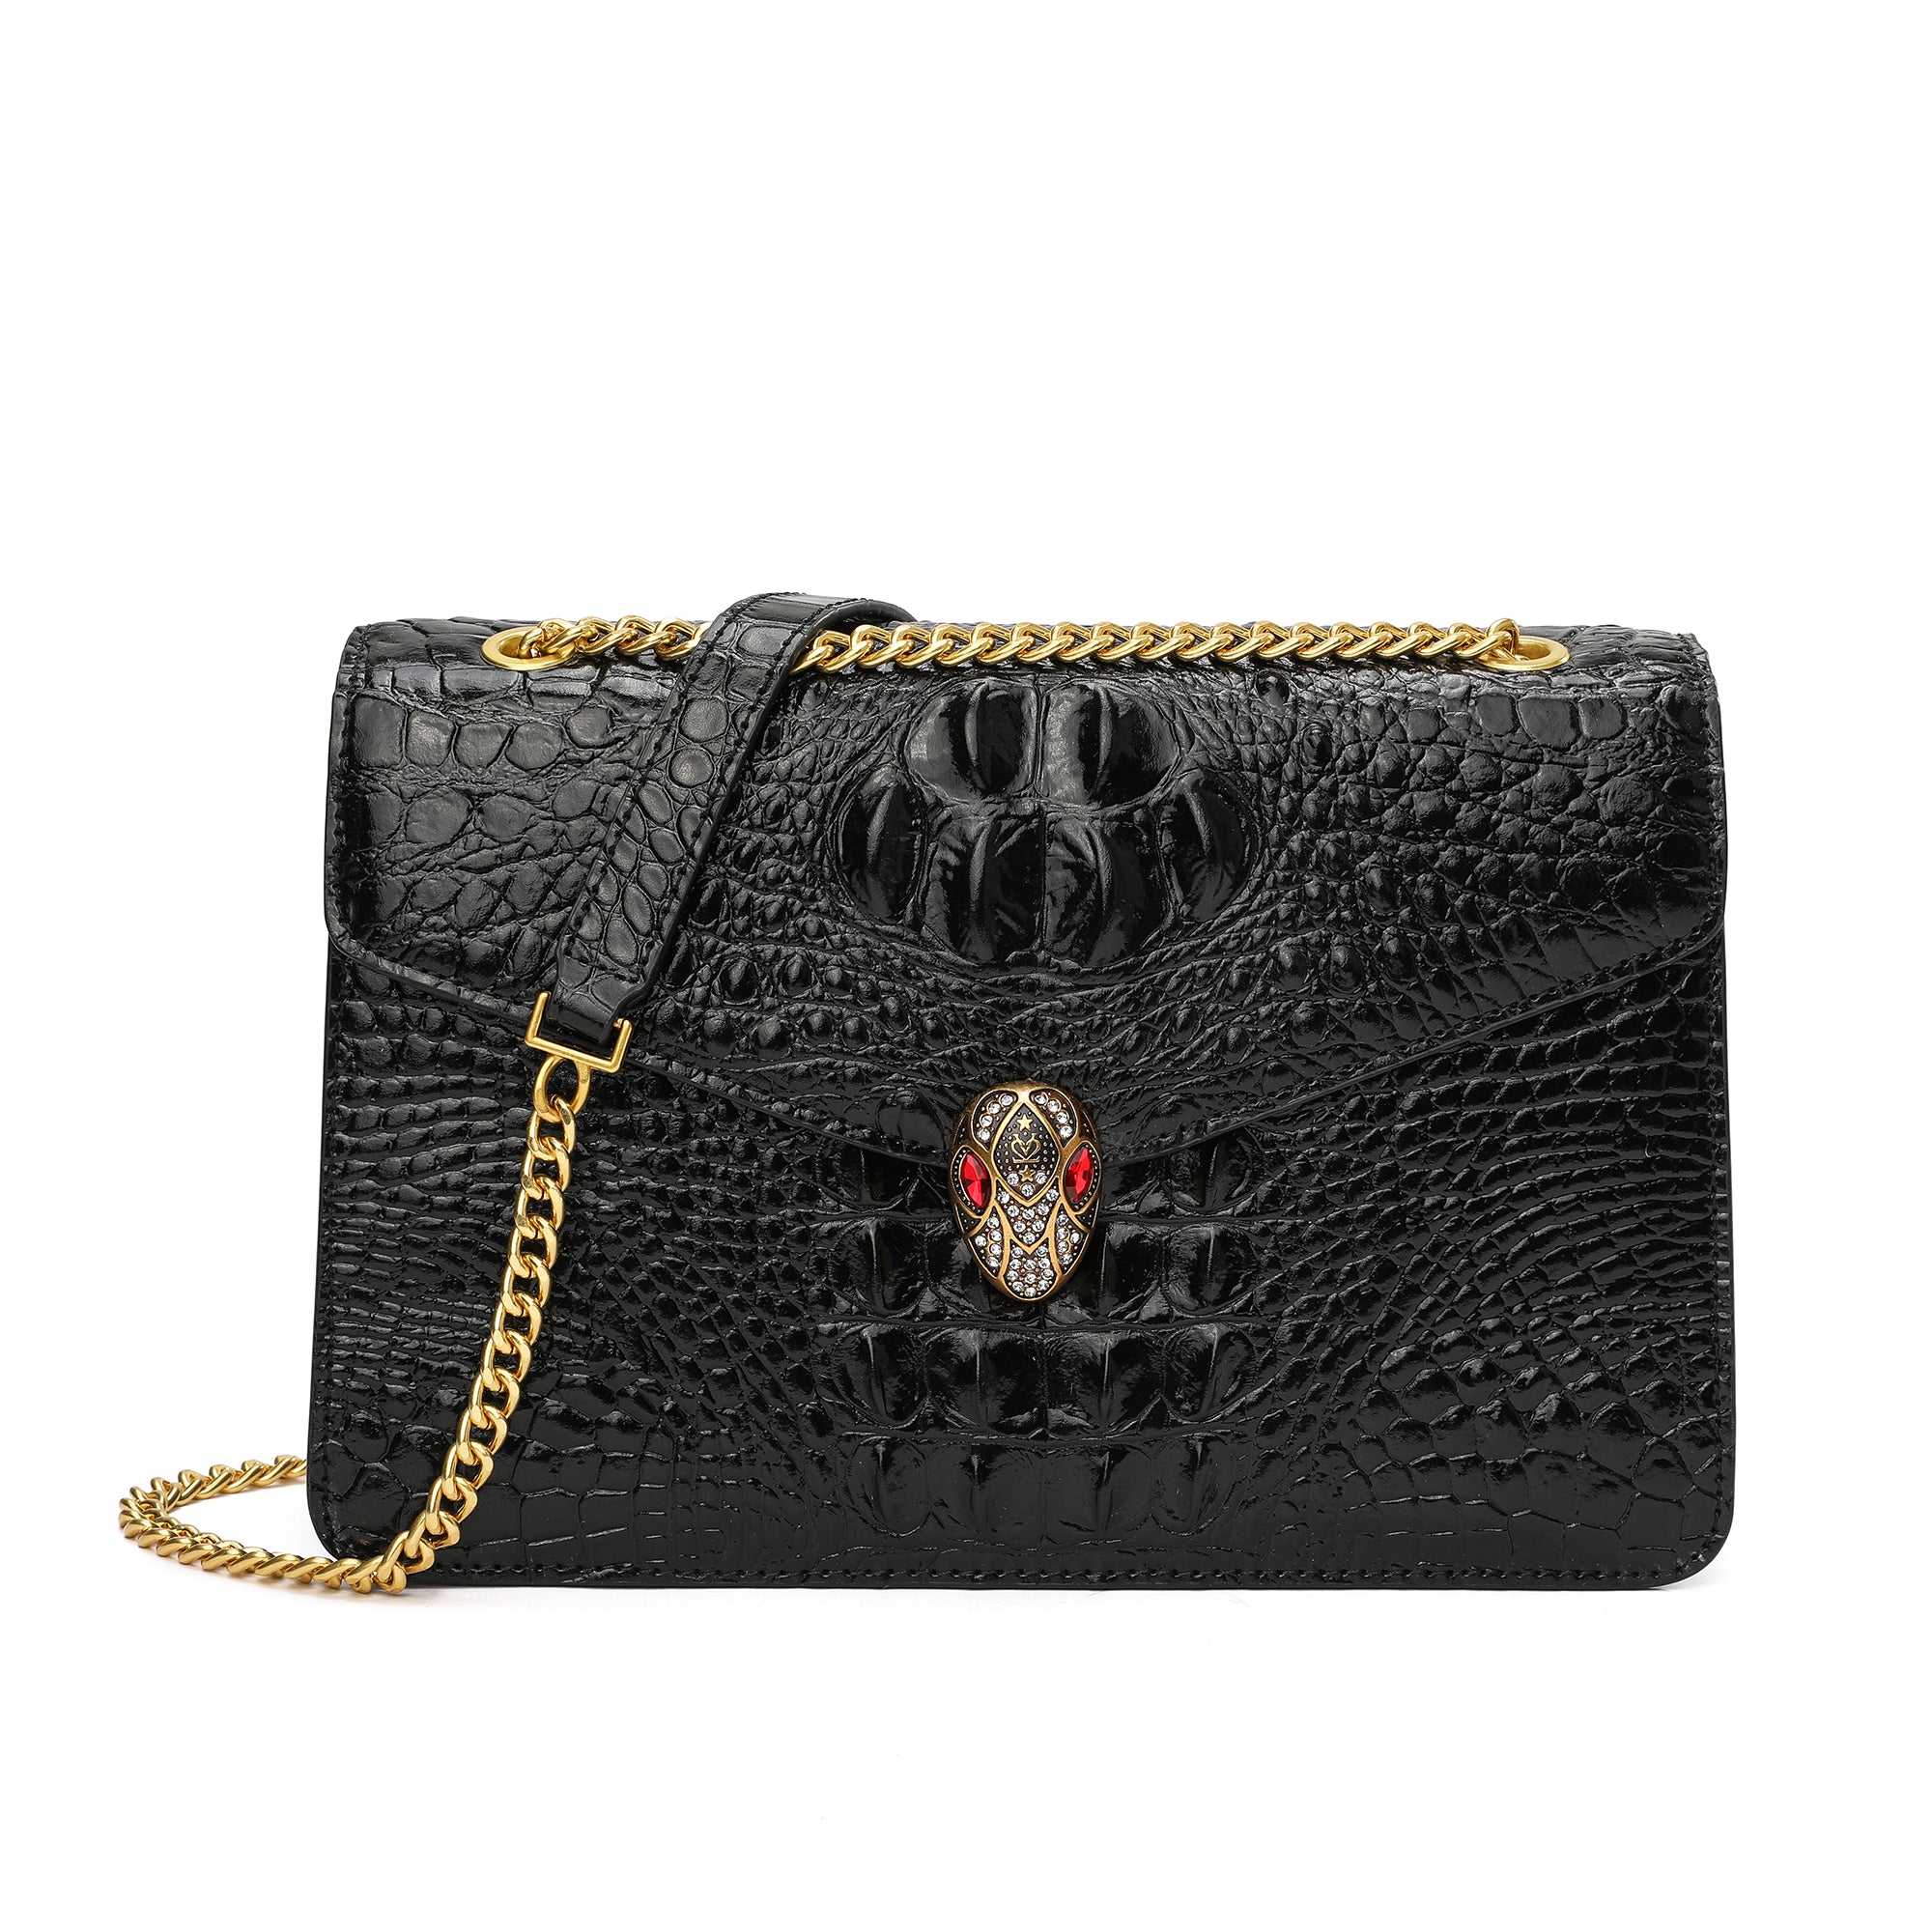 Tiffany & Fred Alligator Embossed Leather Satchel/Shoulder Bag